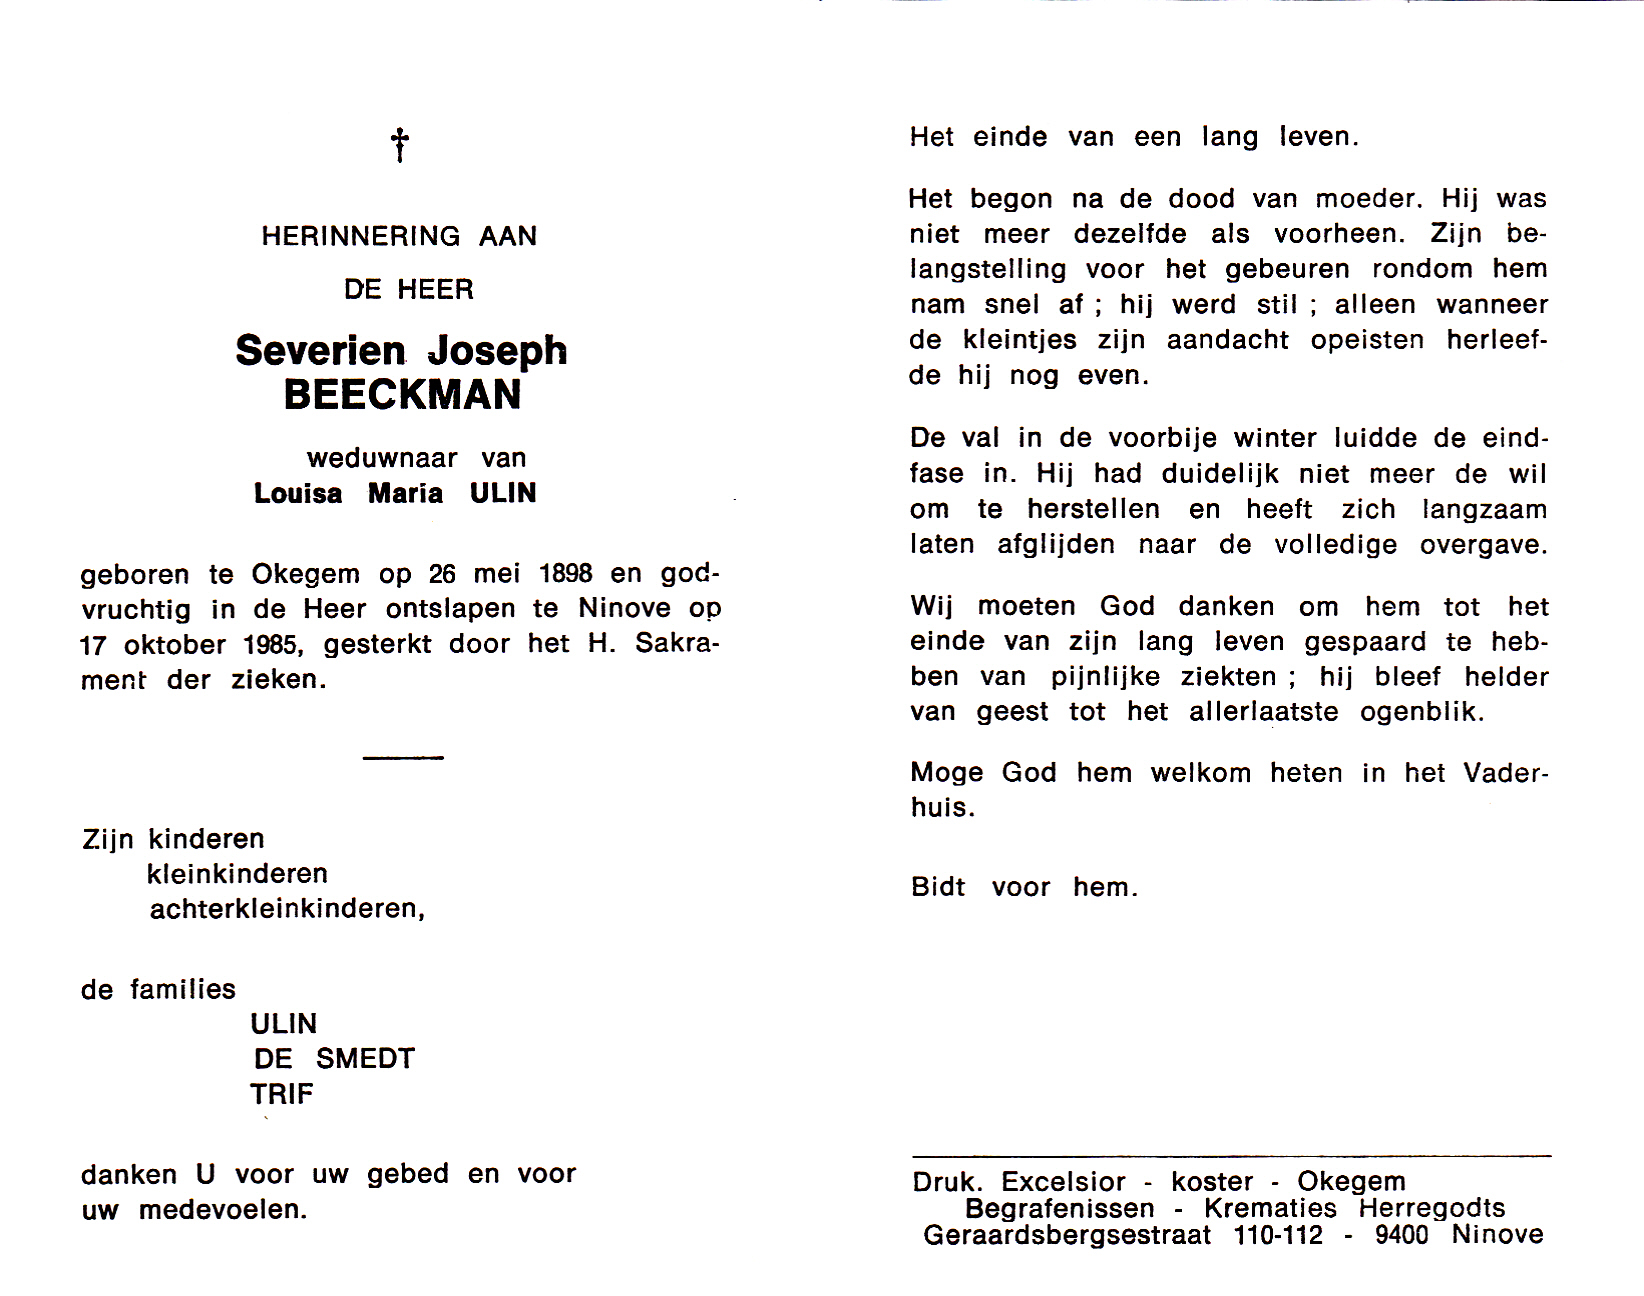 Beeckman Severien Joseph